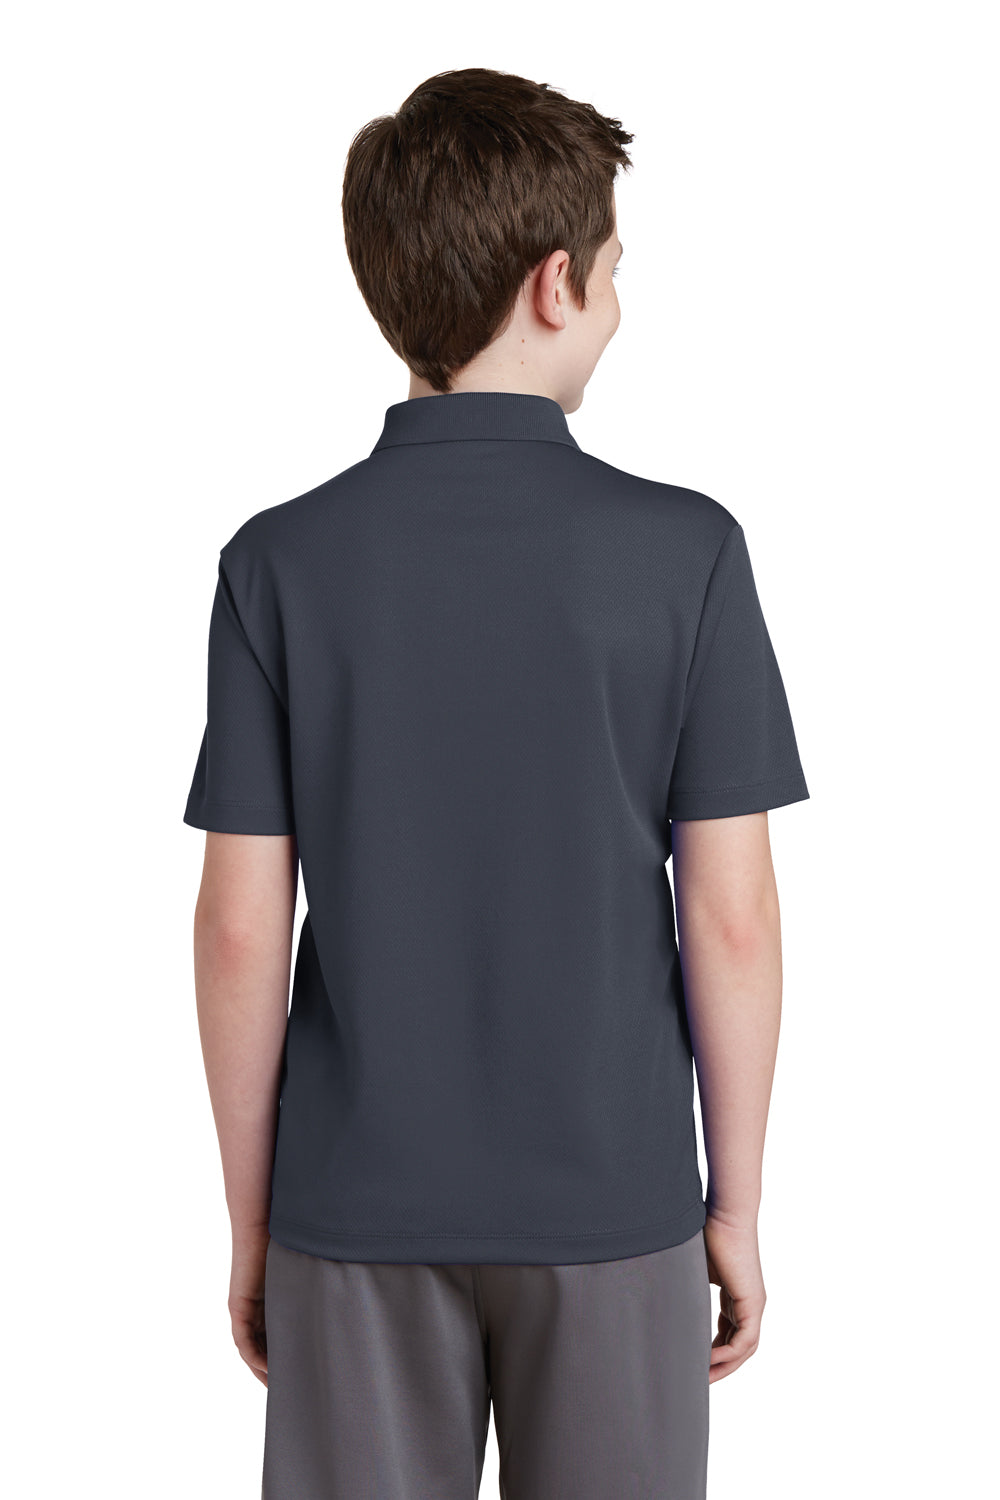 Sport-Tek YST640 Youth RacerMesh Moisture Wicking Short Sleeve Polo Shirt Graphite Grey Back